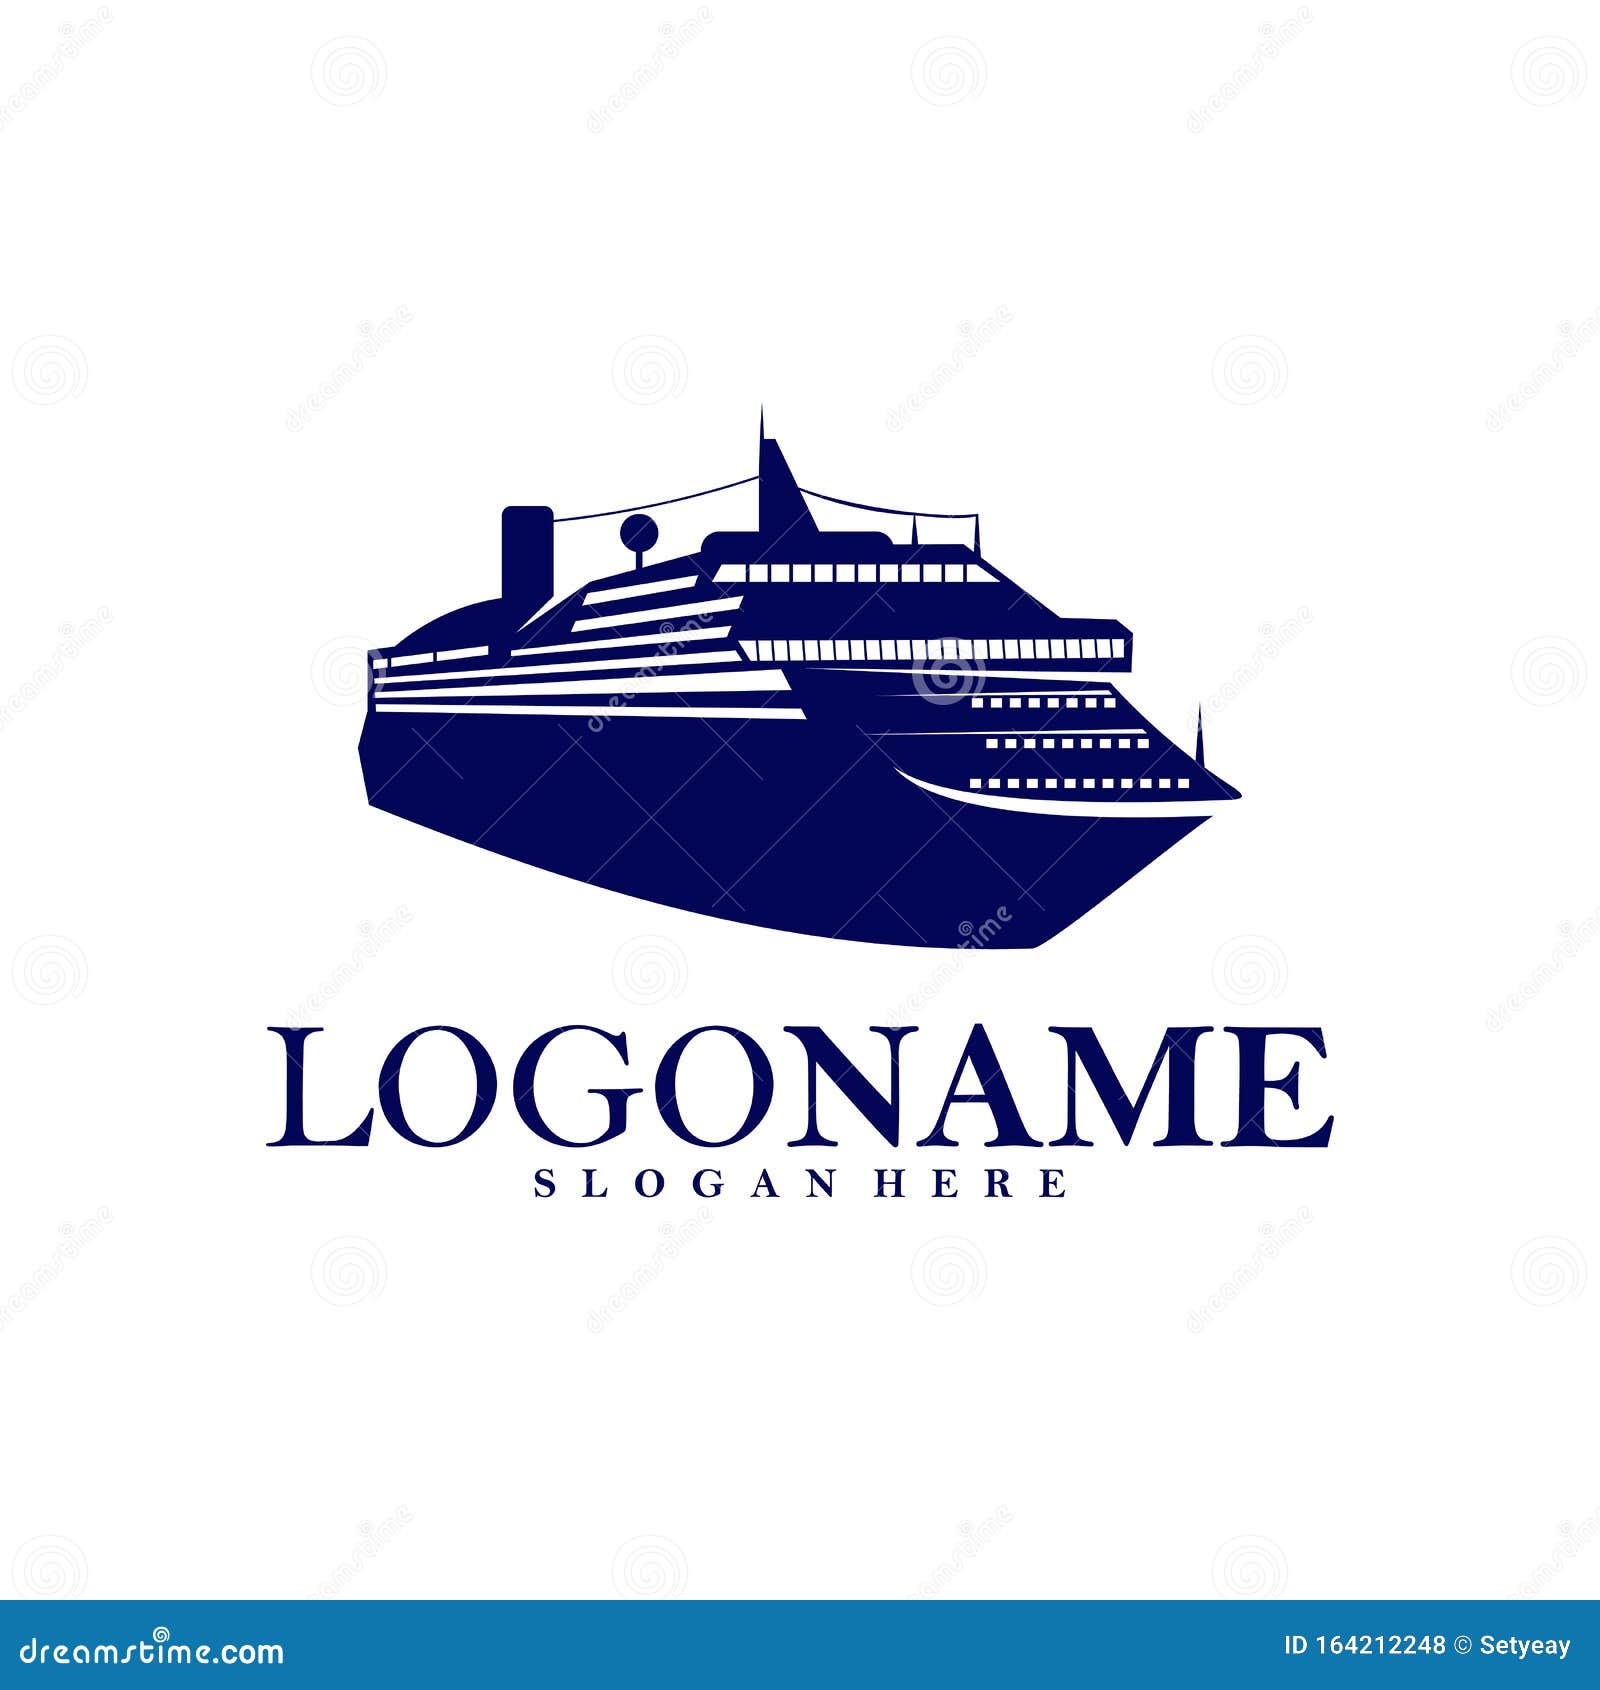 cruise craft logo